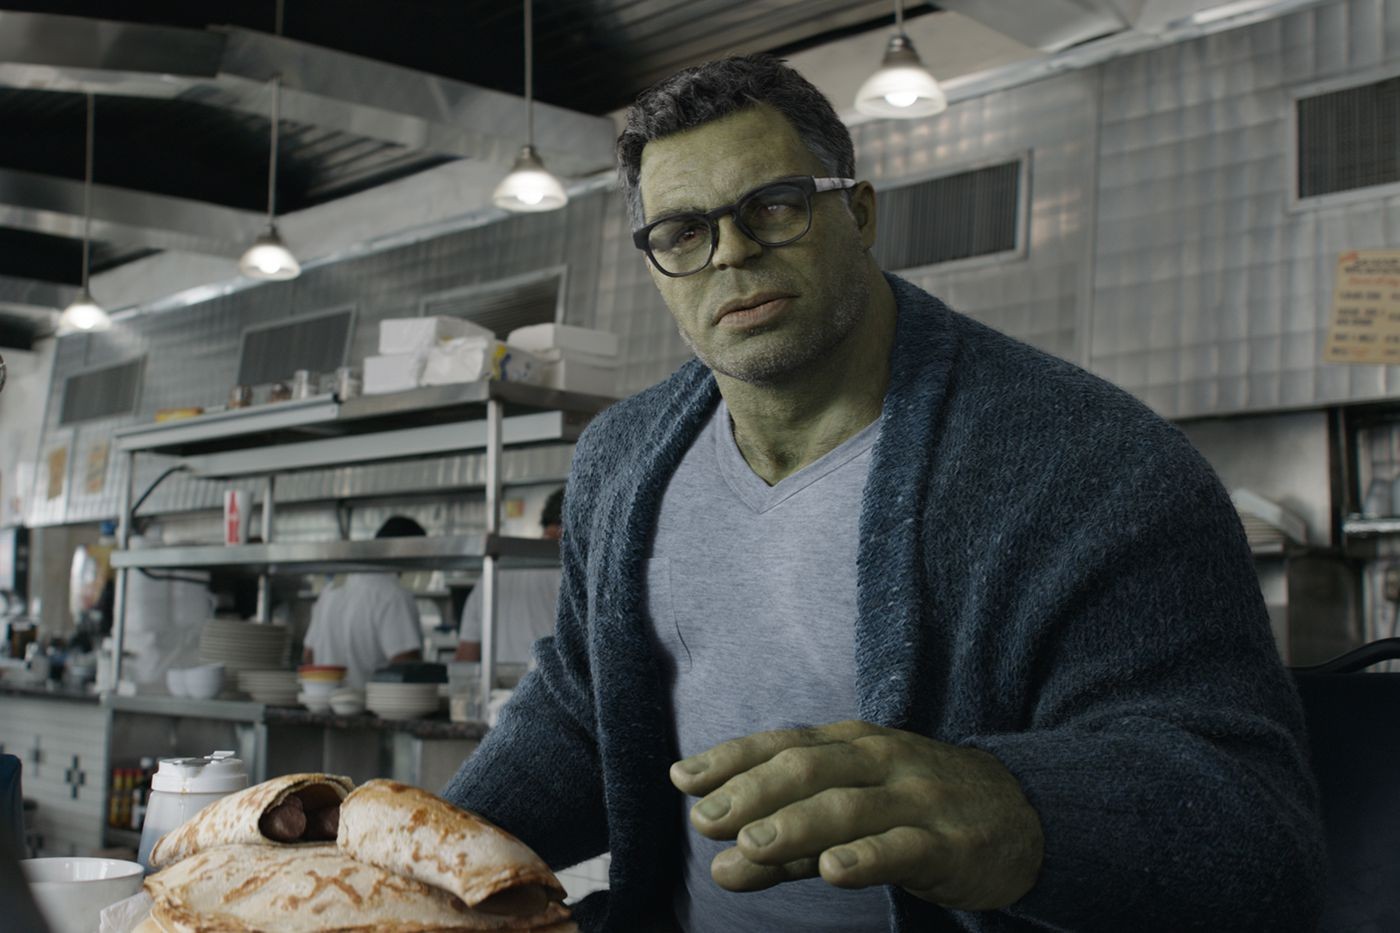 Mark Ruffalo as The Hulk in Avengers: Endgame (2019).